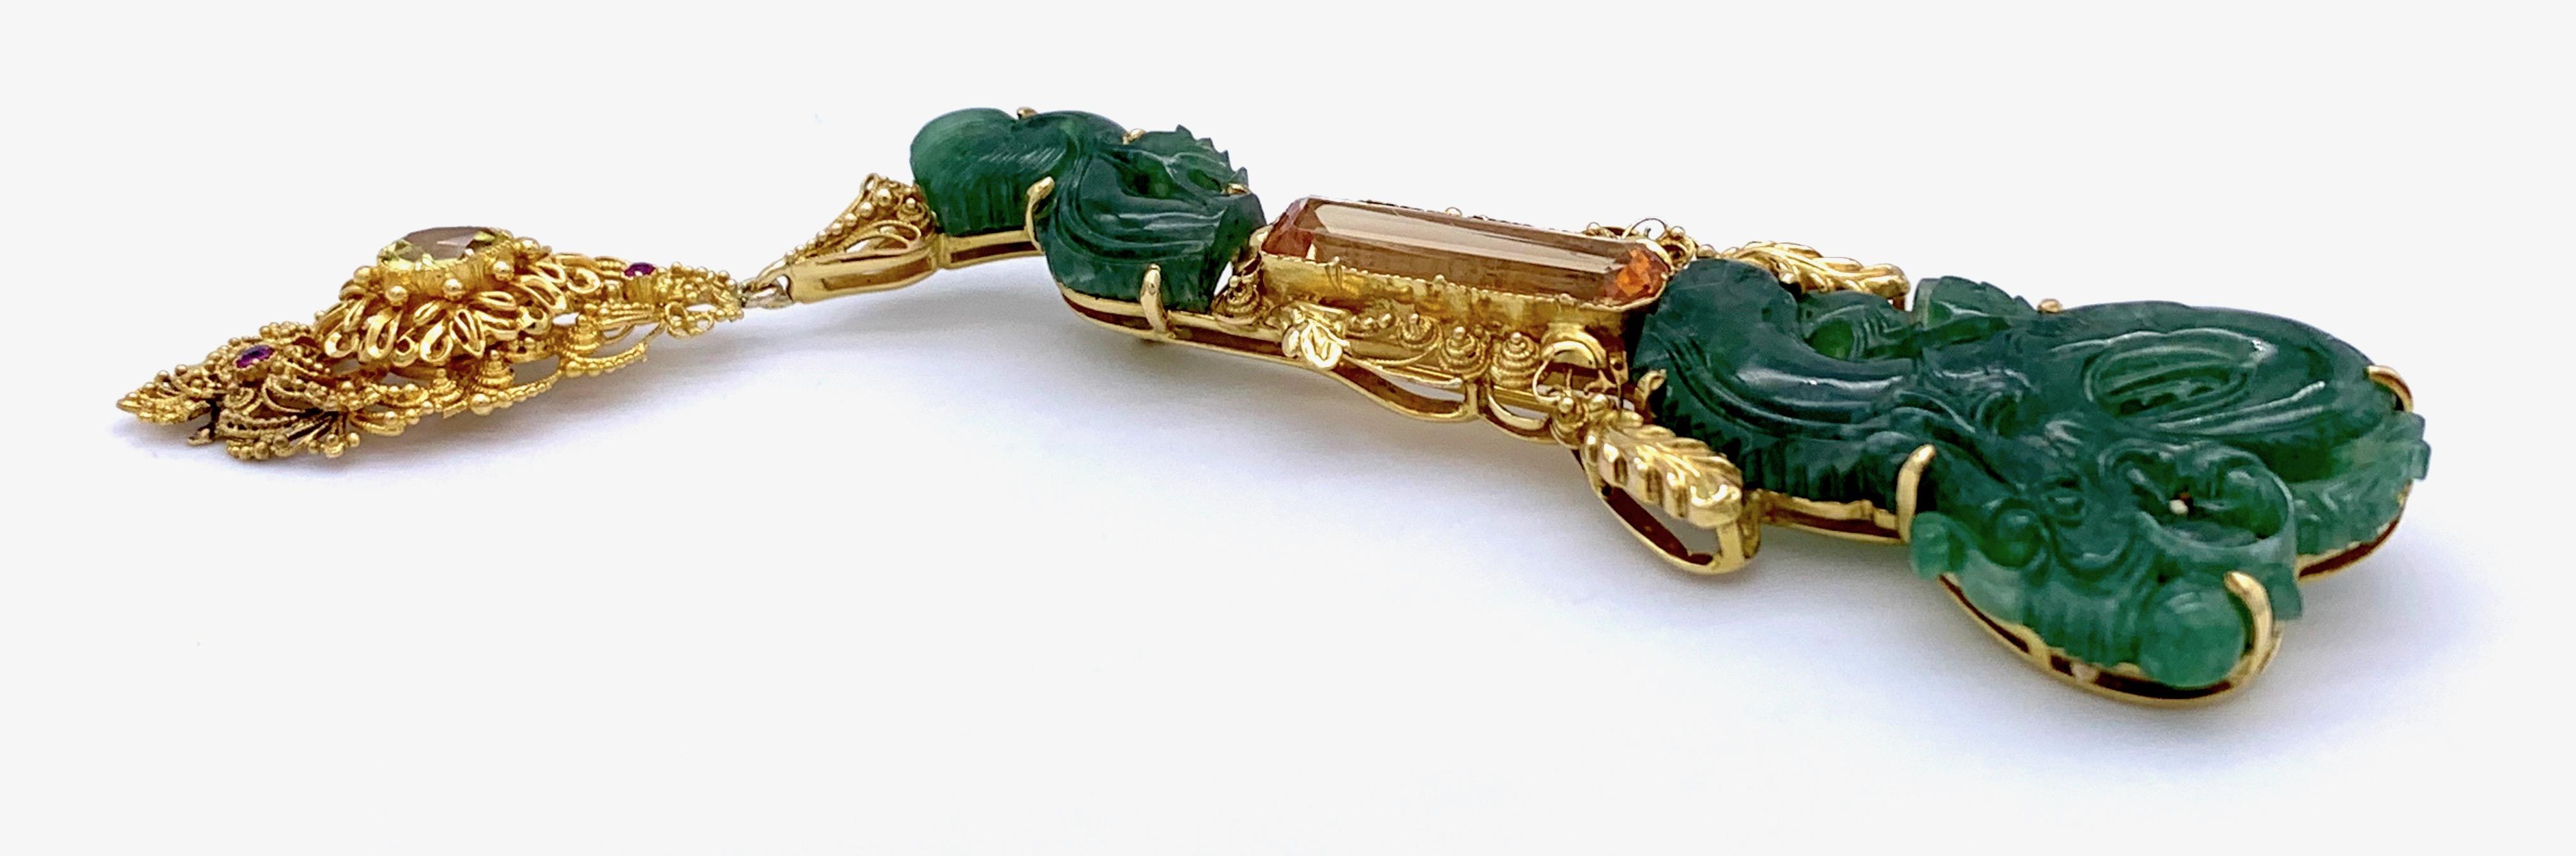 Vintage Dragon Carved Jadeite Topas Ruby 18 Karat Gold Brooch with Pendant For Sale 1